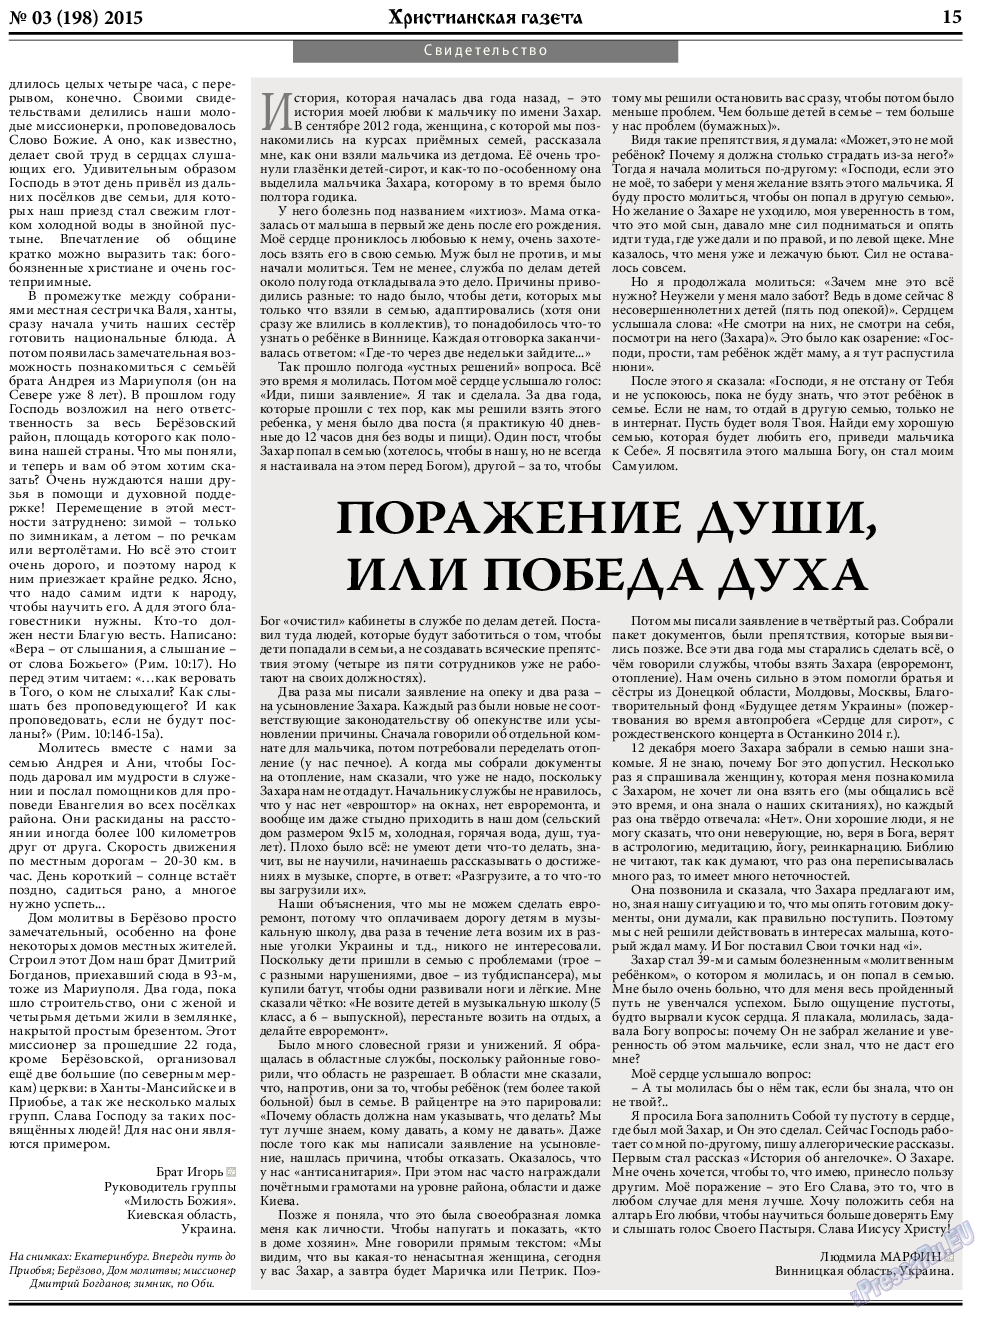 Христианская газета, газета. 2015 №3 стр.23